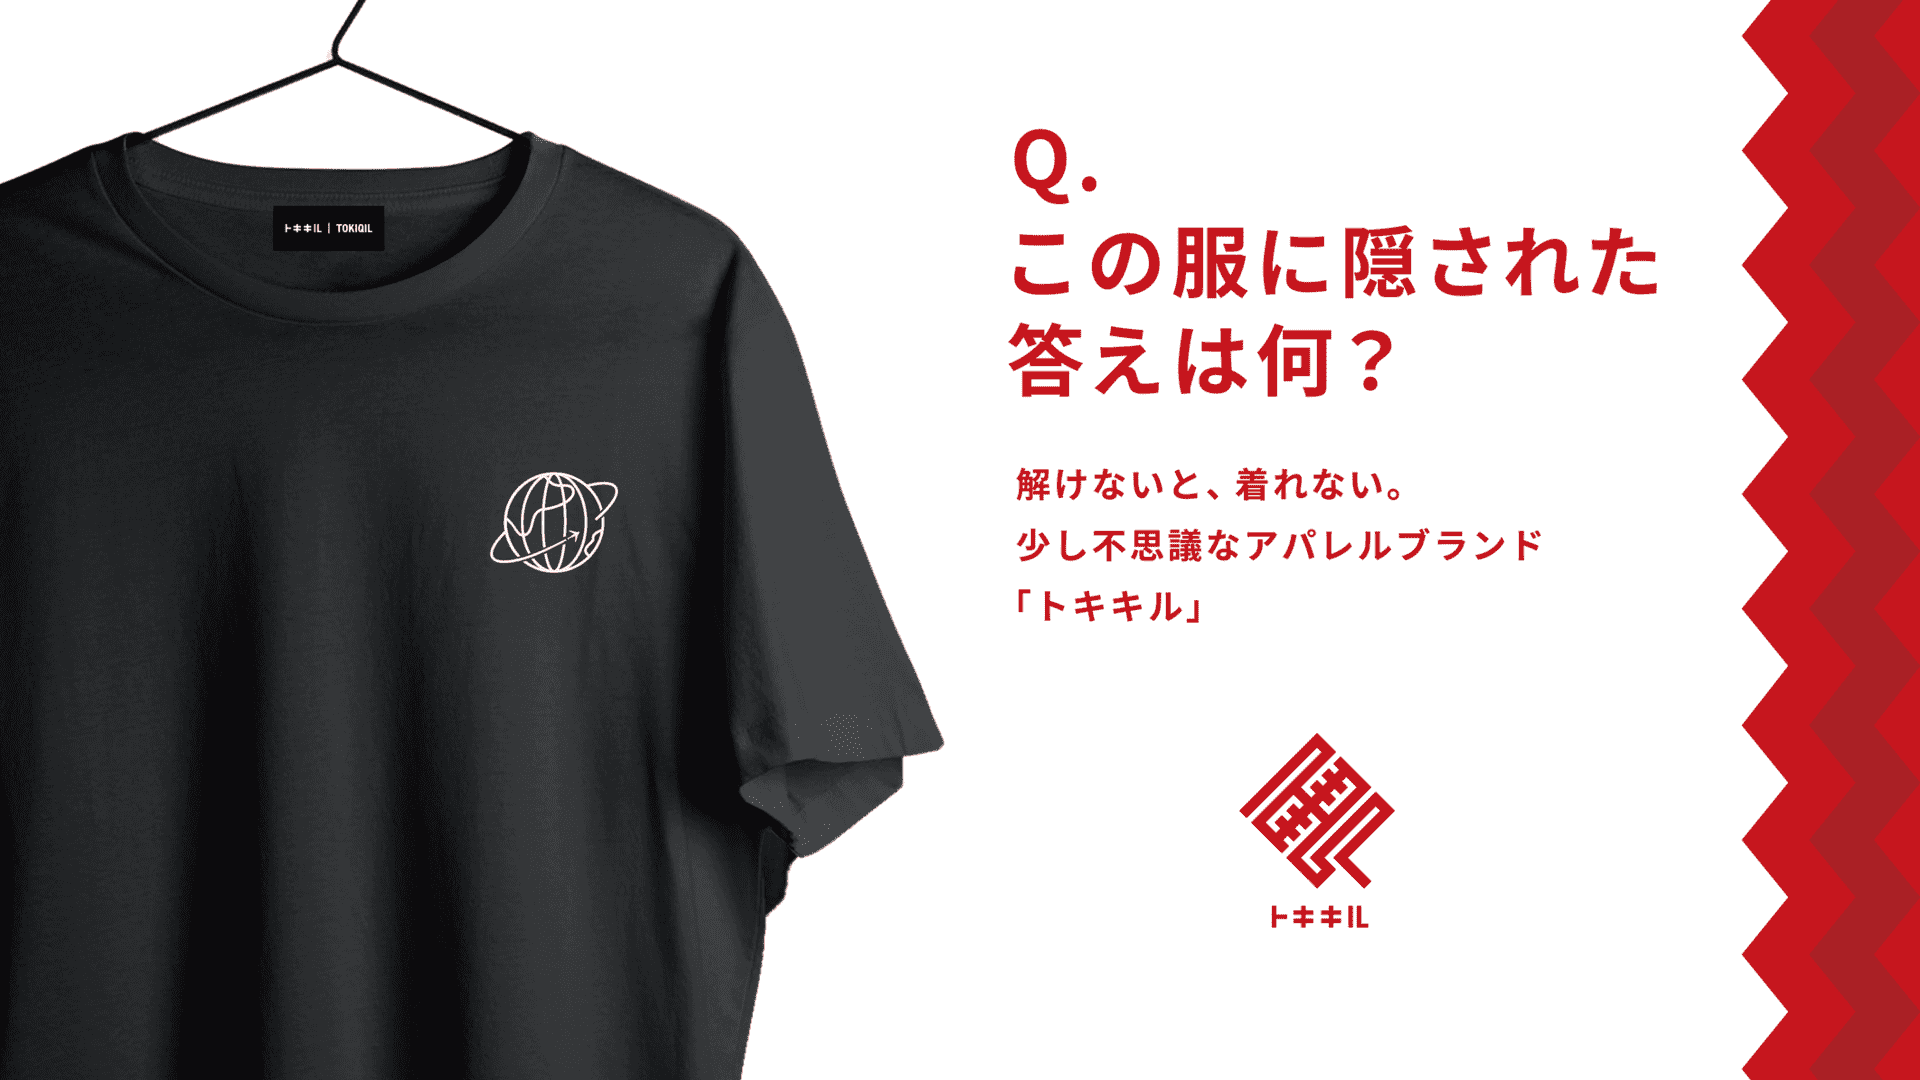 謎を解かないと服が買えないアパレルブランド「トキキル」が大阪のイベントにて特別物販を実施_001